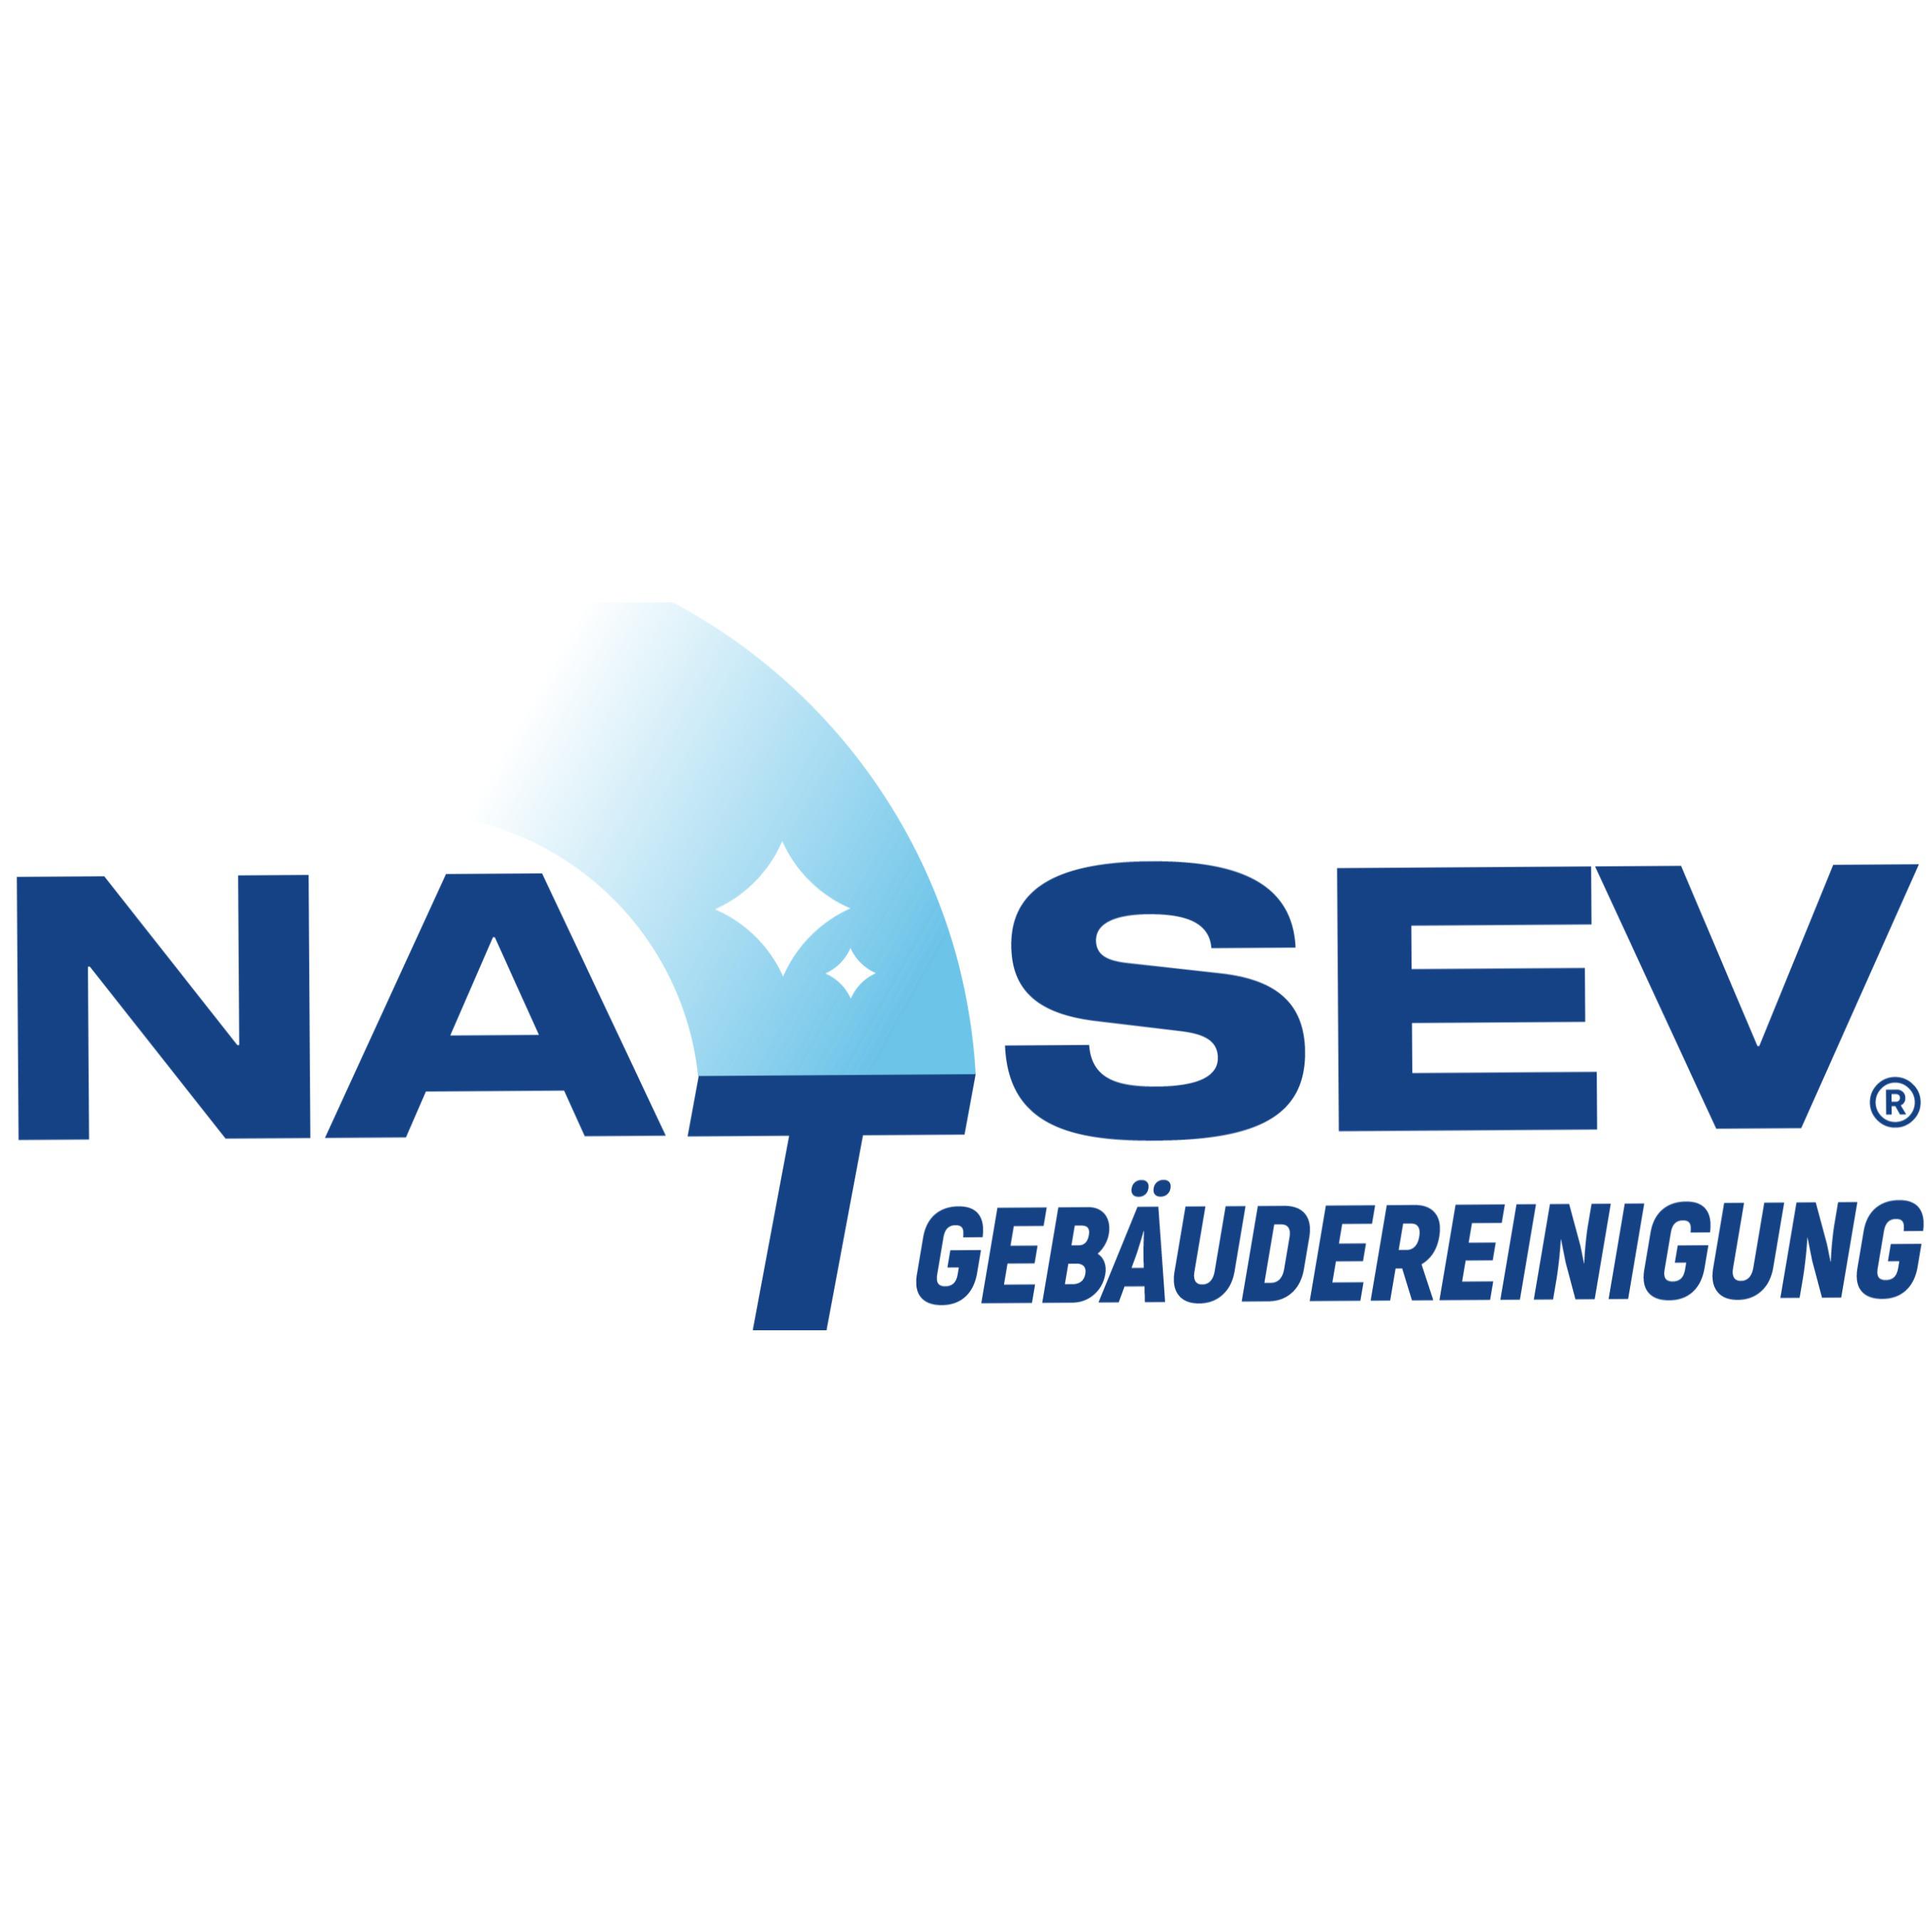 Natsev Gebäudereinigung in Münster - Logo